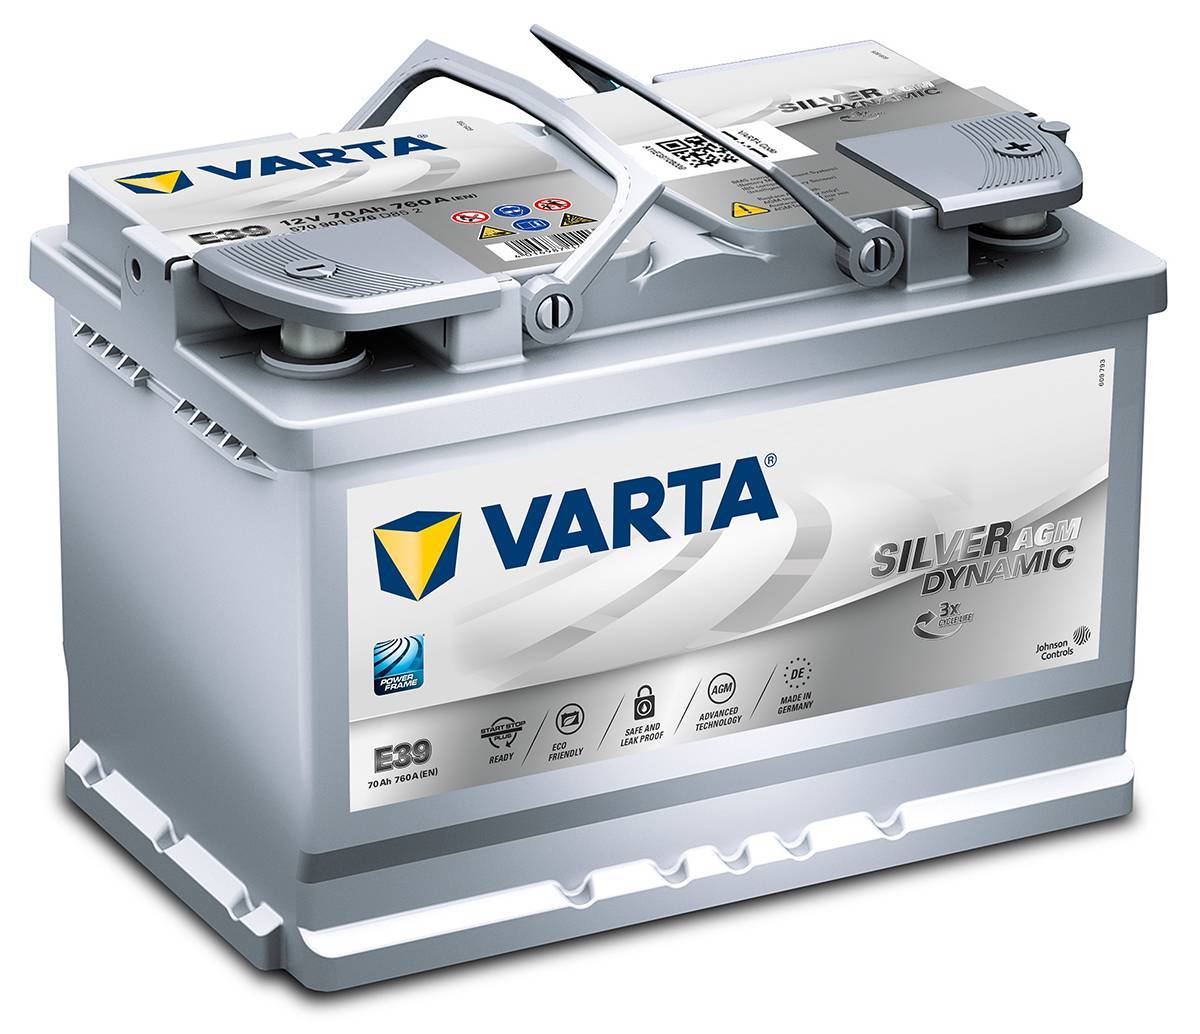 Autobatterie Varta Blue Dynamic F17 12V 80 Ah günstig kaufen bei HC  Hurricane